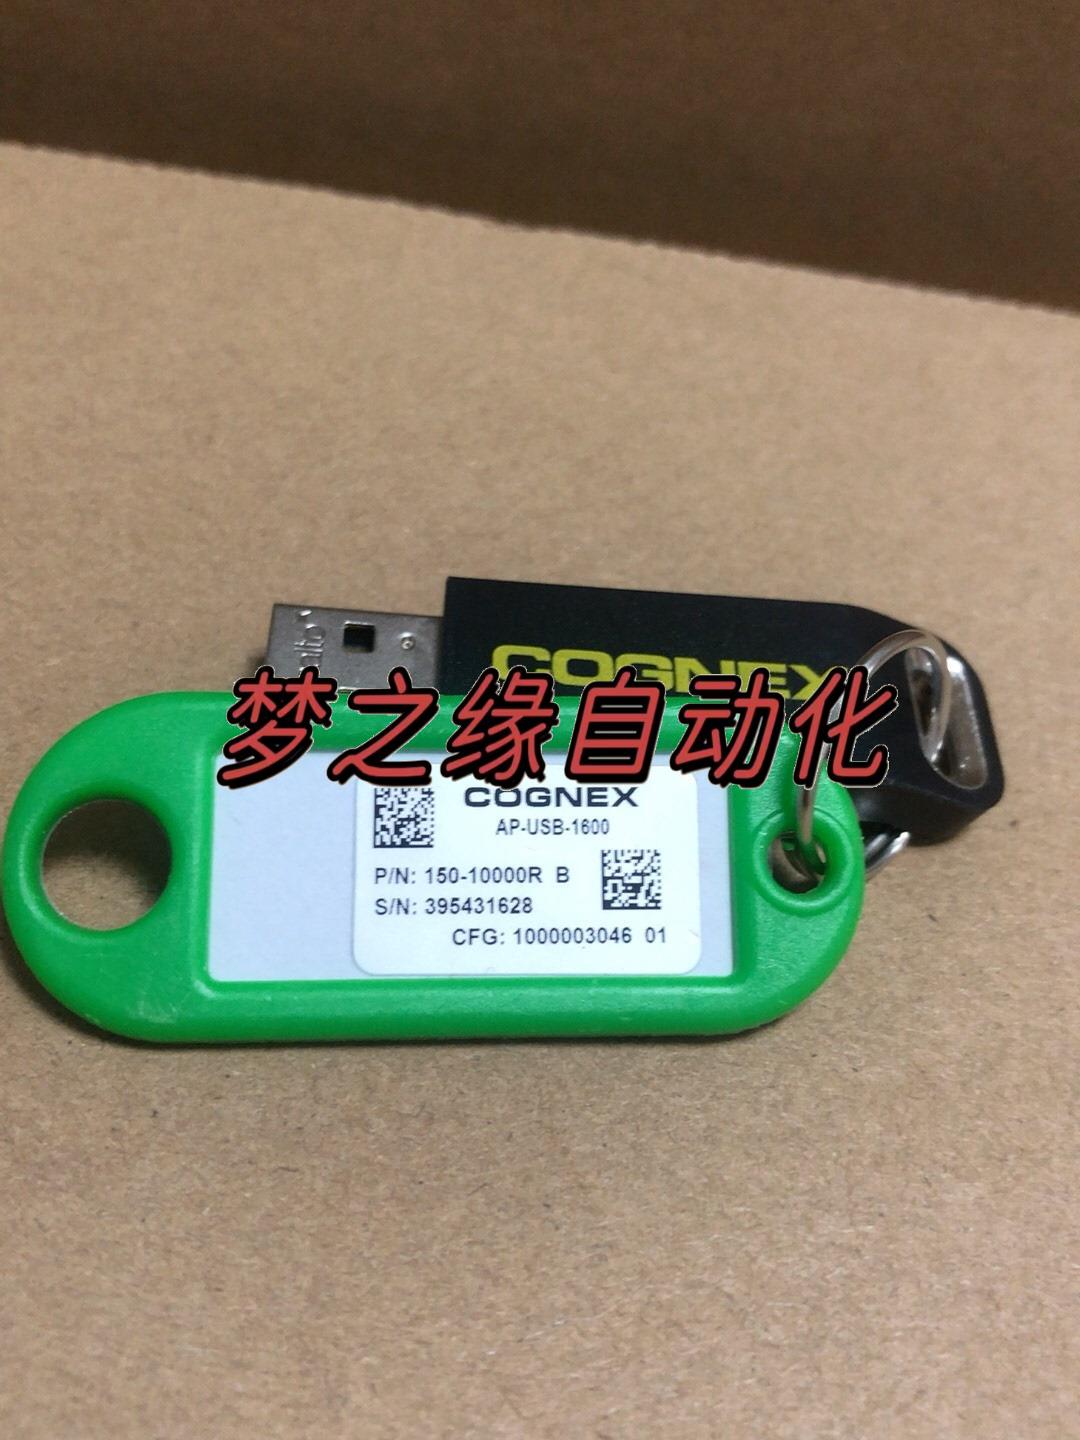 康耐视加密狗Ap-usb-1600，懂的入手。议价 3C数码配件 USB电脑锁/防盗器 原图主图